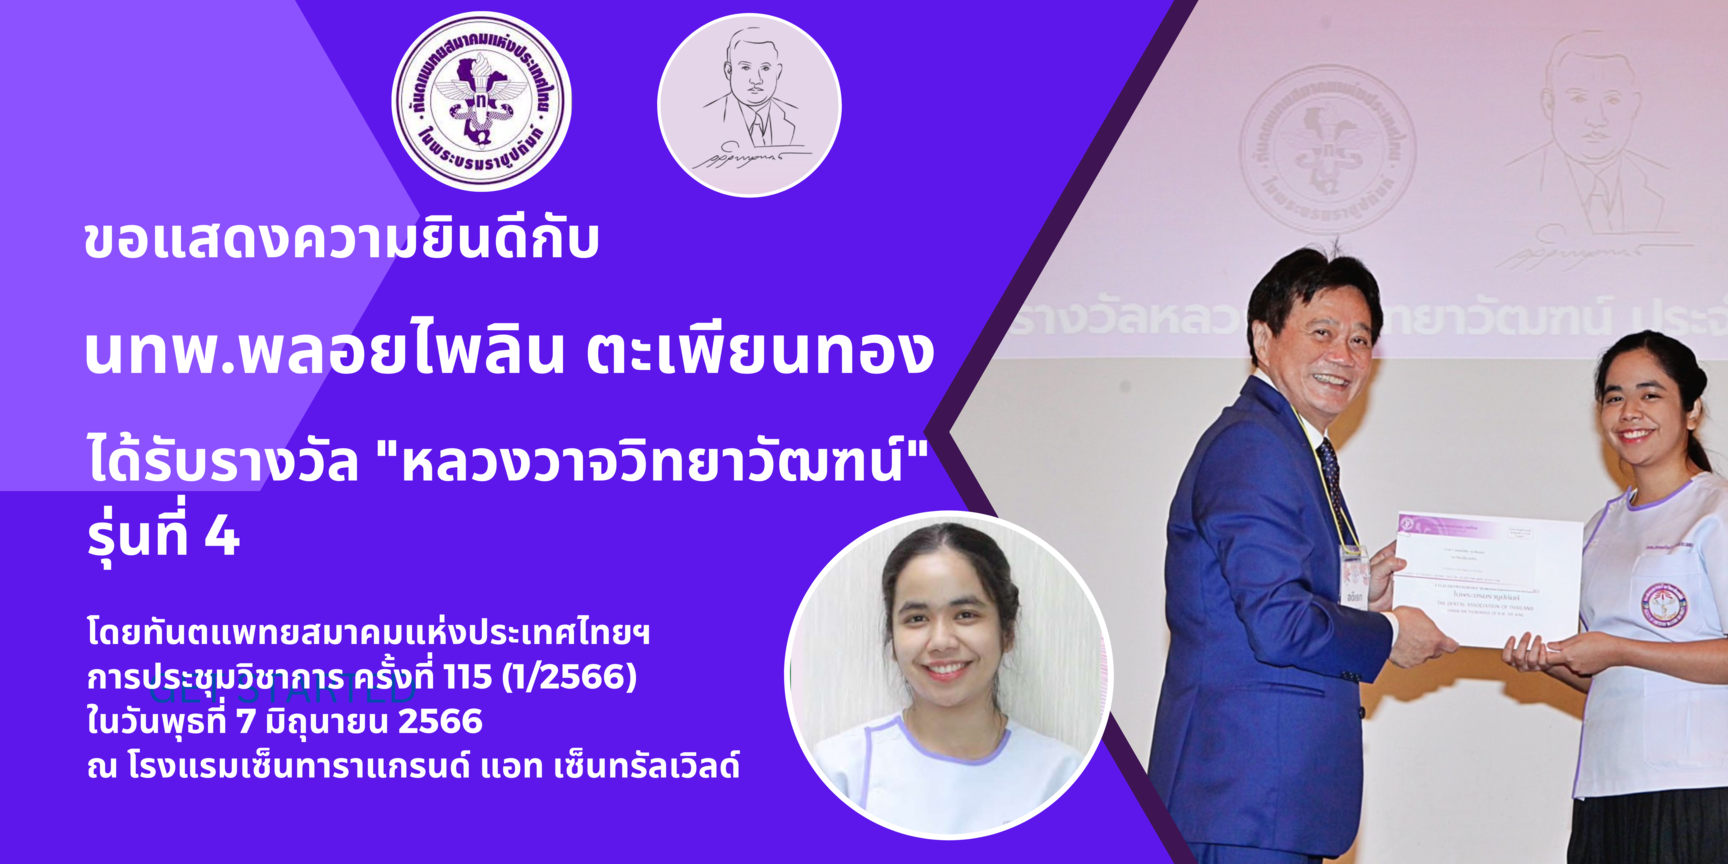 นทพ.พลอยไพลิน ตะเพียนทอง ได้รับรางวัล “หลวงวาจวิทยาวัฑฒน์ ประจำปี 2566” (รุ่น 4) จากทันตแพทยสมาคมแห่งประเทศไทย ในพระบรมราชูปถัมภ์ ปีการศึกษา 2565